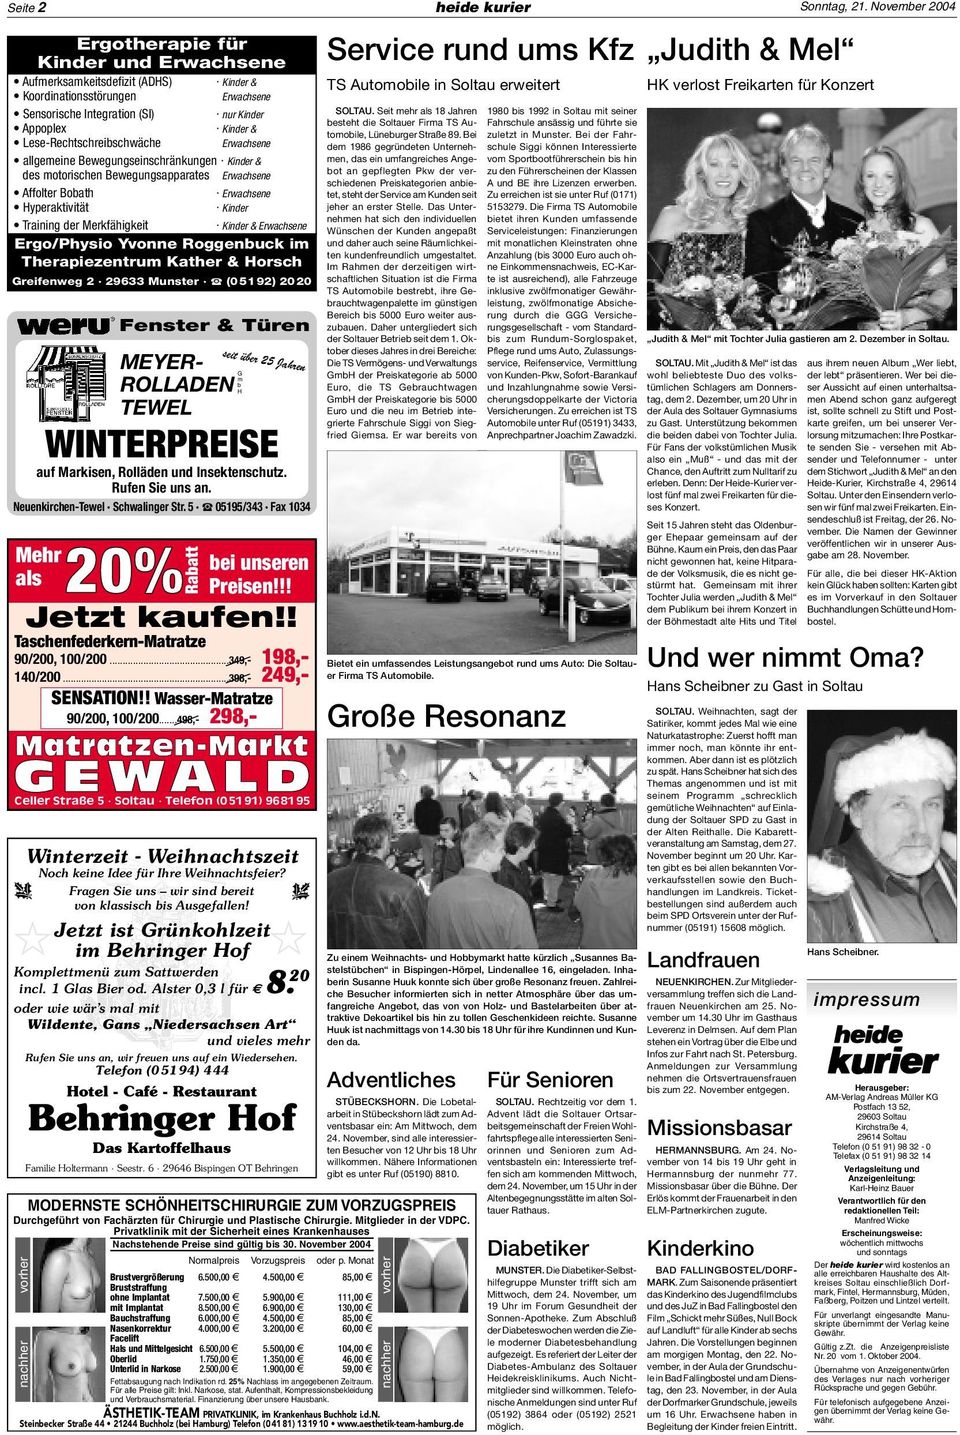 November 2004 vorher nachher Fenster & Türen Herausgeber: AM-Verlag Andreas Müller KG Postfach 13 52, 29603 Soltau Kirchstraße 4, 29614 Soltau Telefon (0 51 91) 98 32-0 Telefax (0 51 91) 98 32 14